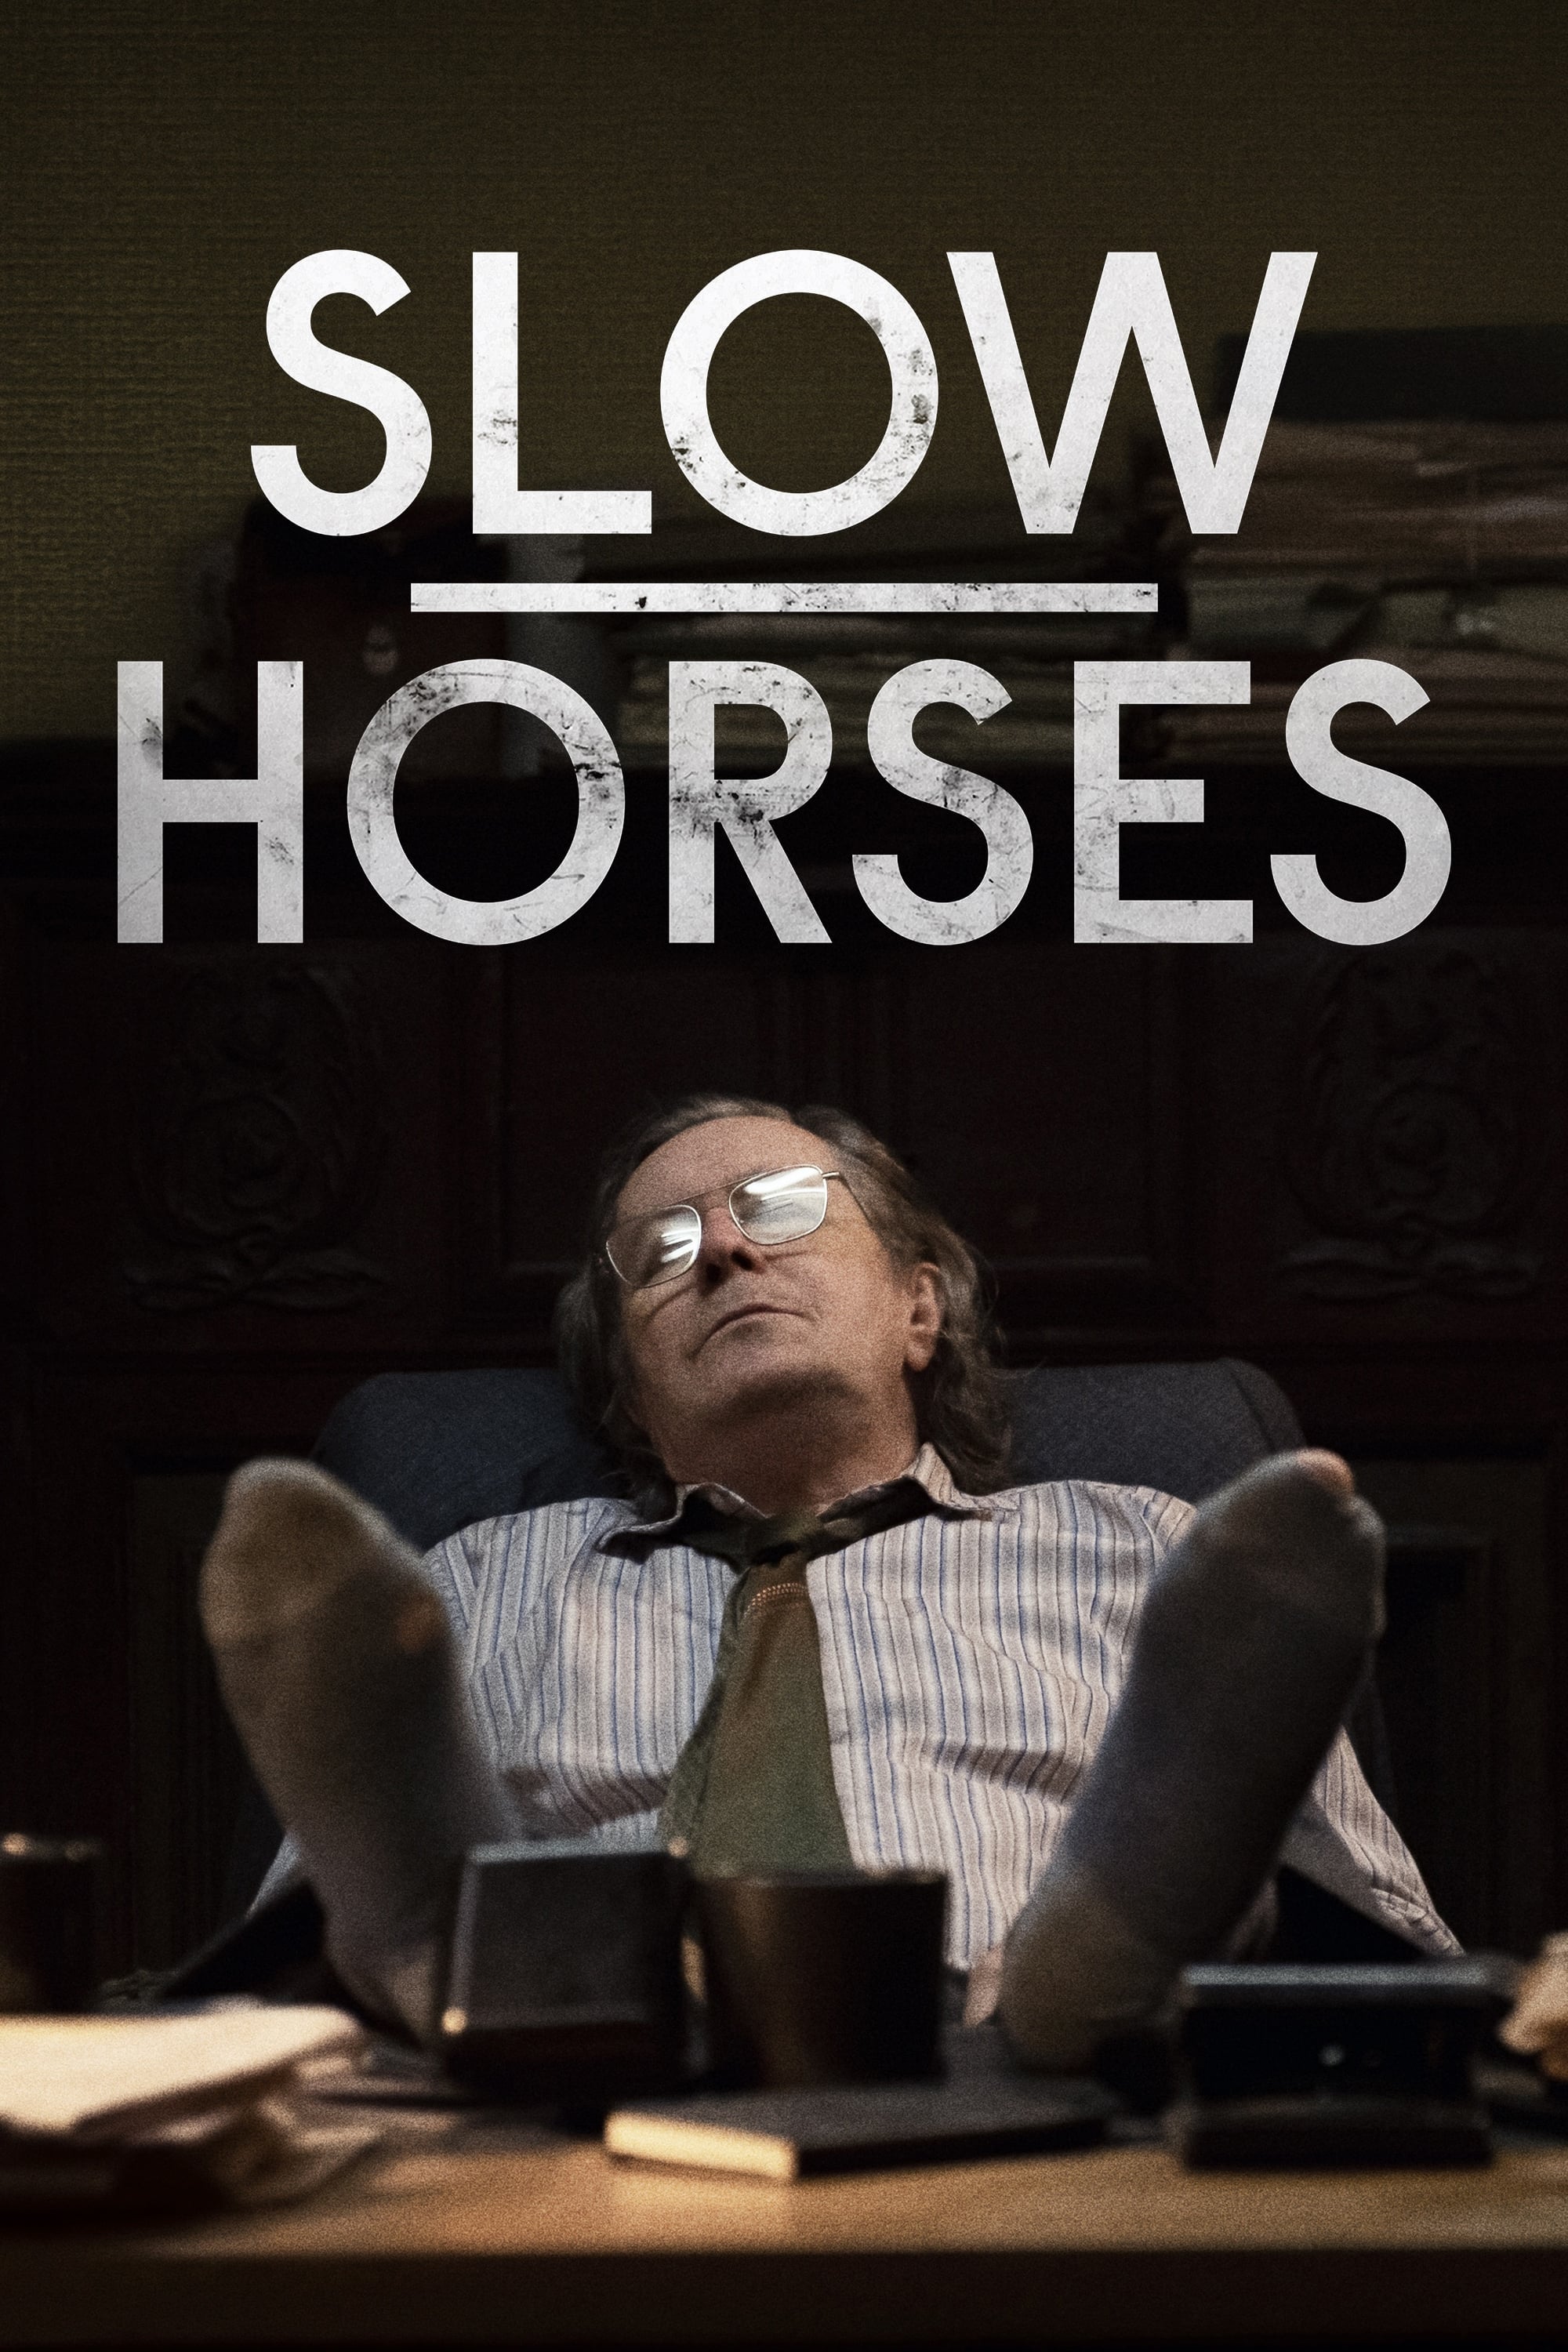 下等马,慢马,流人 第一季 Slow Horses Season 1海报